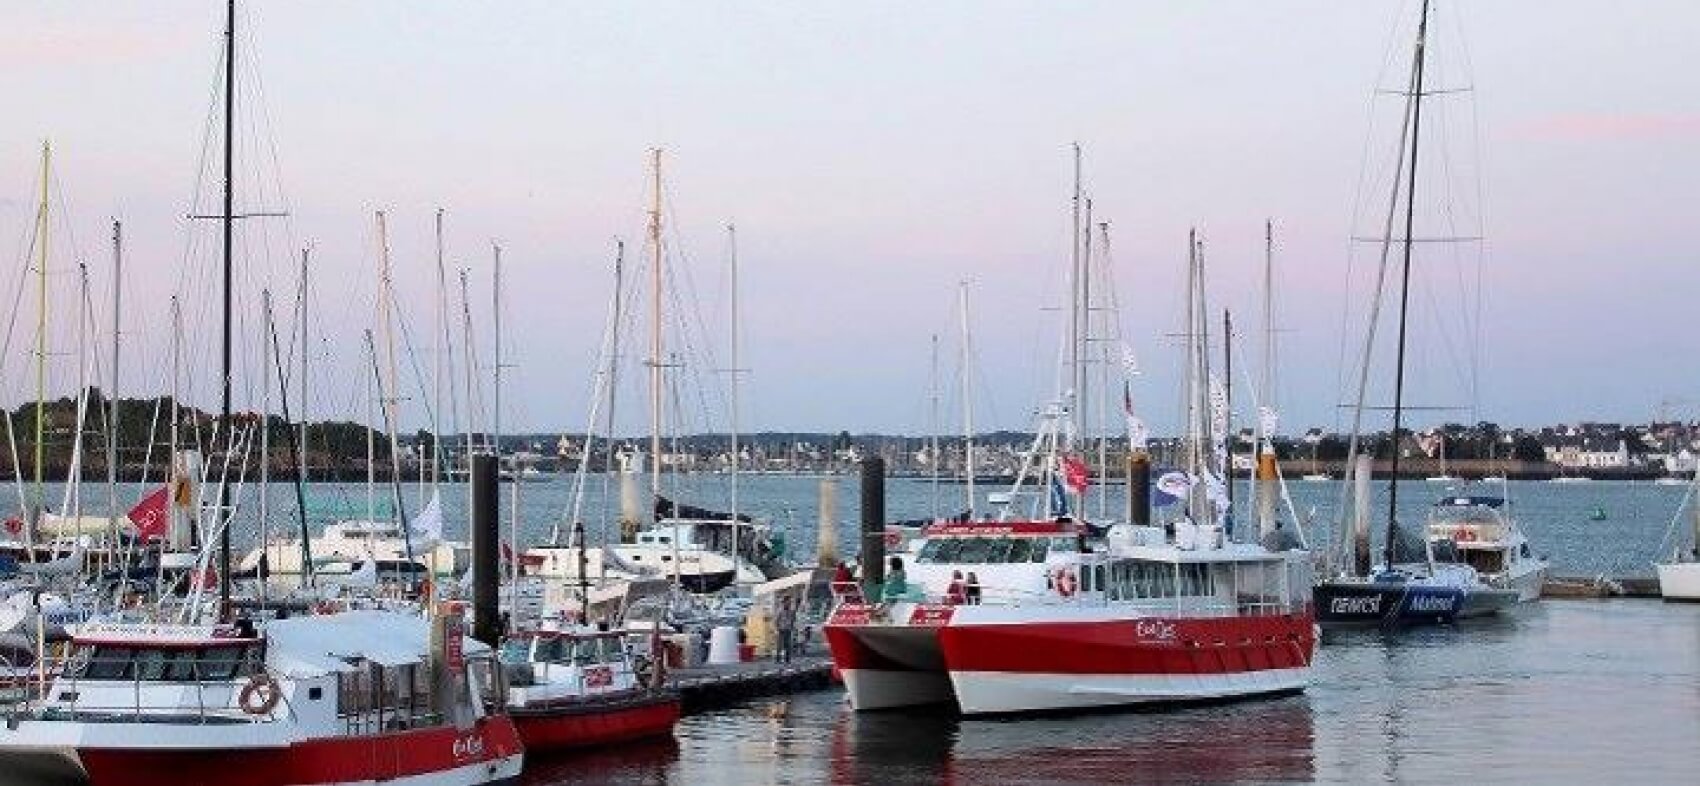 La rade de Lorient